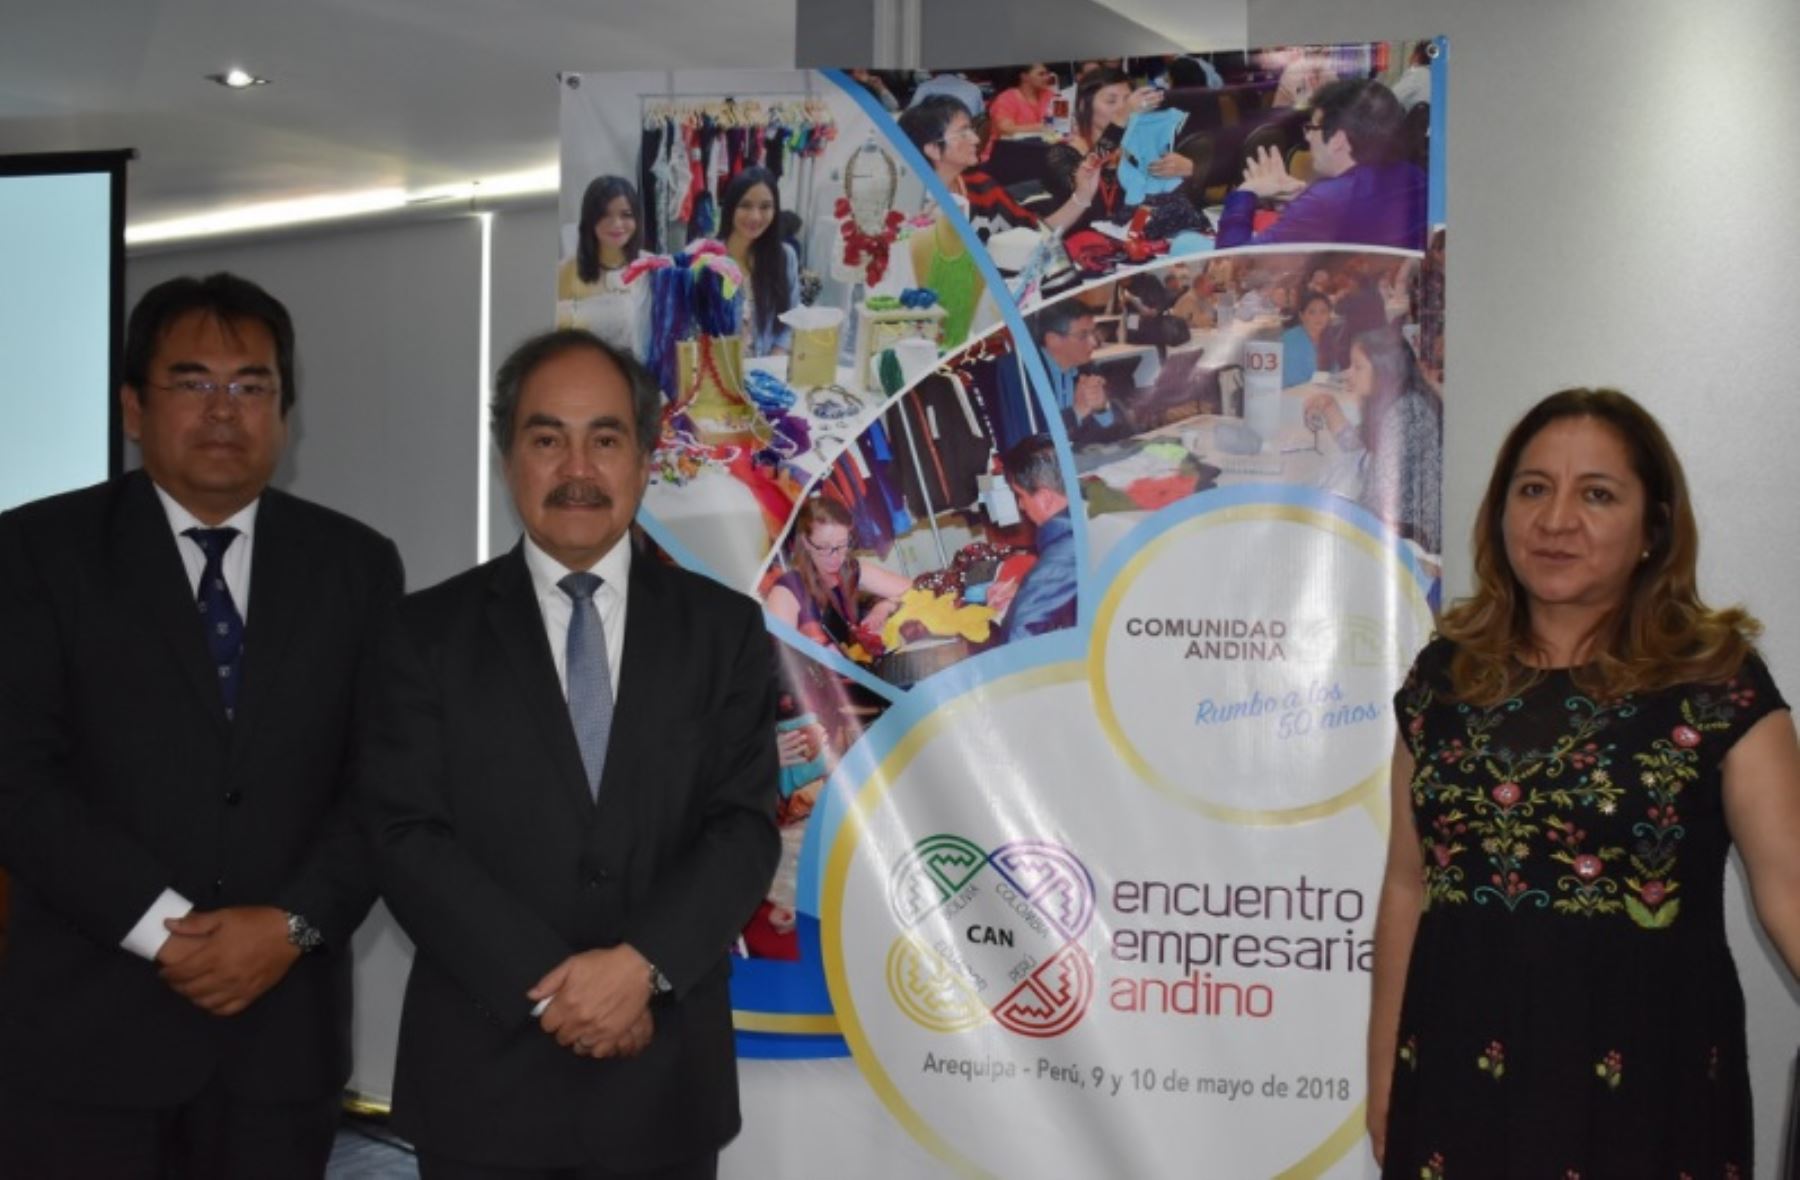 Representantes de Comunidad Andina de Naciones, ADEX y Promperú anuncian VII Encuentro Empresarial Andino en la ciudad de  Arequipa, el 9 y 10 de febrero de 2018.